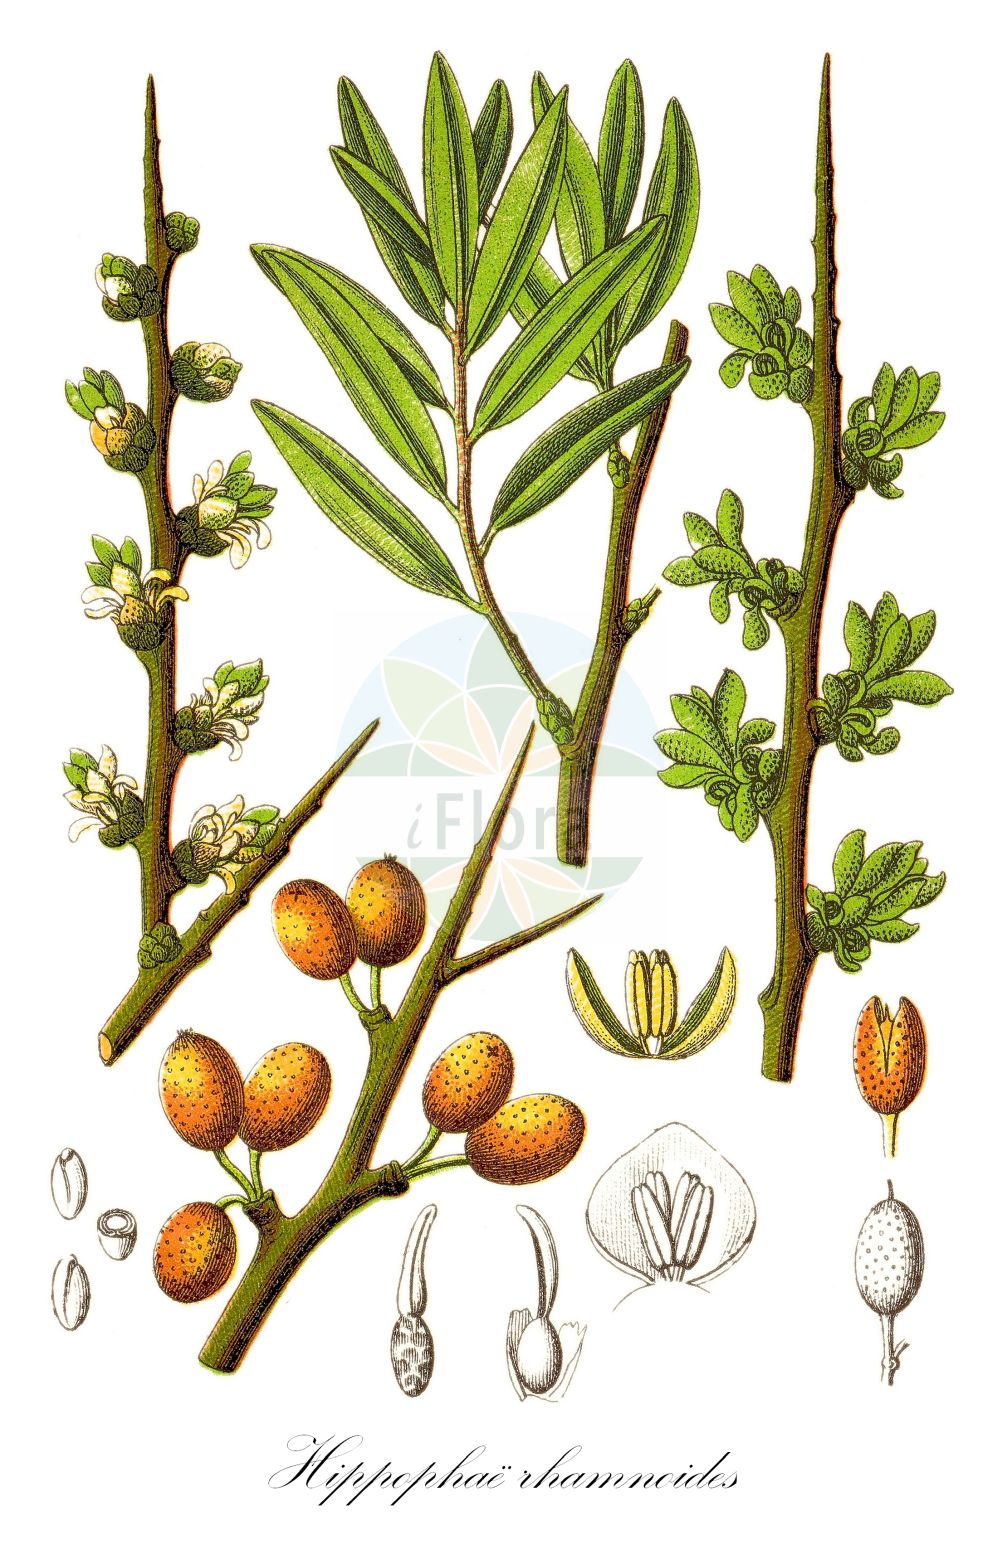 Historische Abbildung von Hippophae rhamnoides. ---- Historical Drawing of Hippophae rhamnoides.(Hippophae rhamnoides,Elaeagnus rhamnoides,Hippophae rhamnoides,Gewoehnlicher Sanddorn,Fluss-Sanddorn,Gebirgs-Sanddorn,Karpaten-Sanddorn,Sea-buckthorn,Sallowthorn,Seaberry,Hippophae,Elaeagnaceae,Ölweidengewächse,Oleaster family,Sturm (1796f))